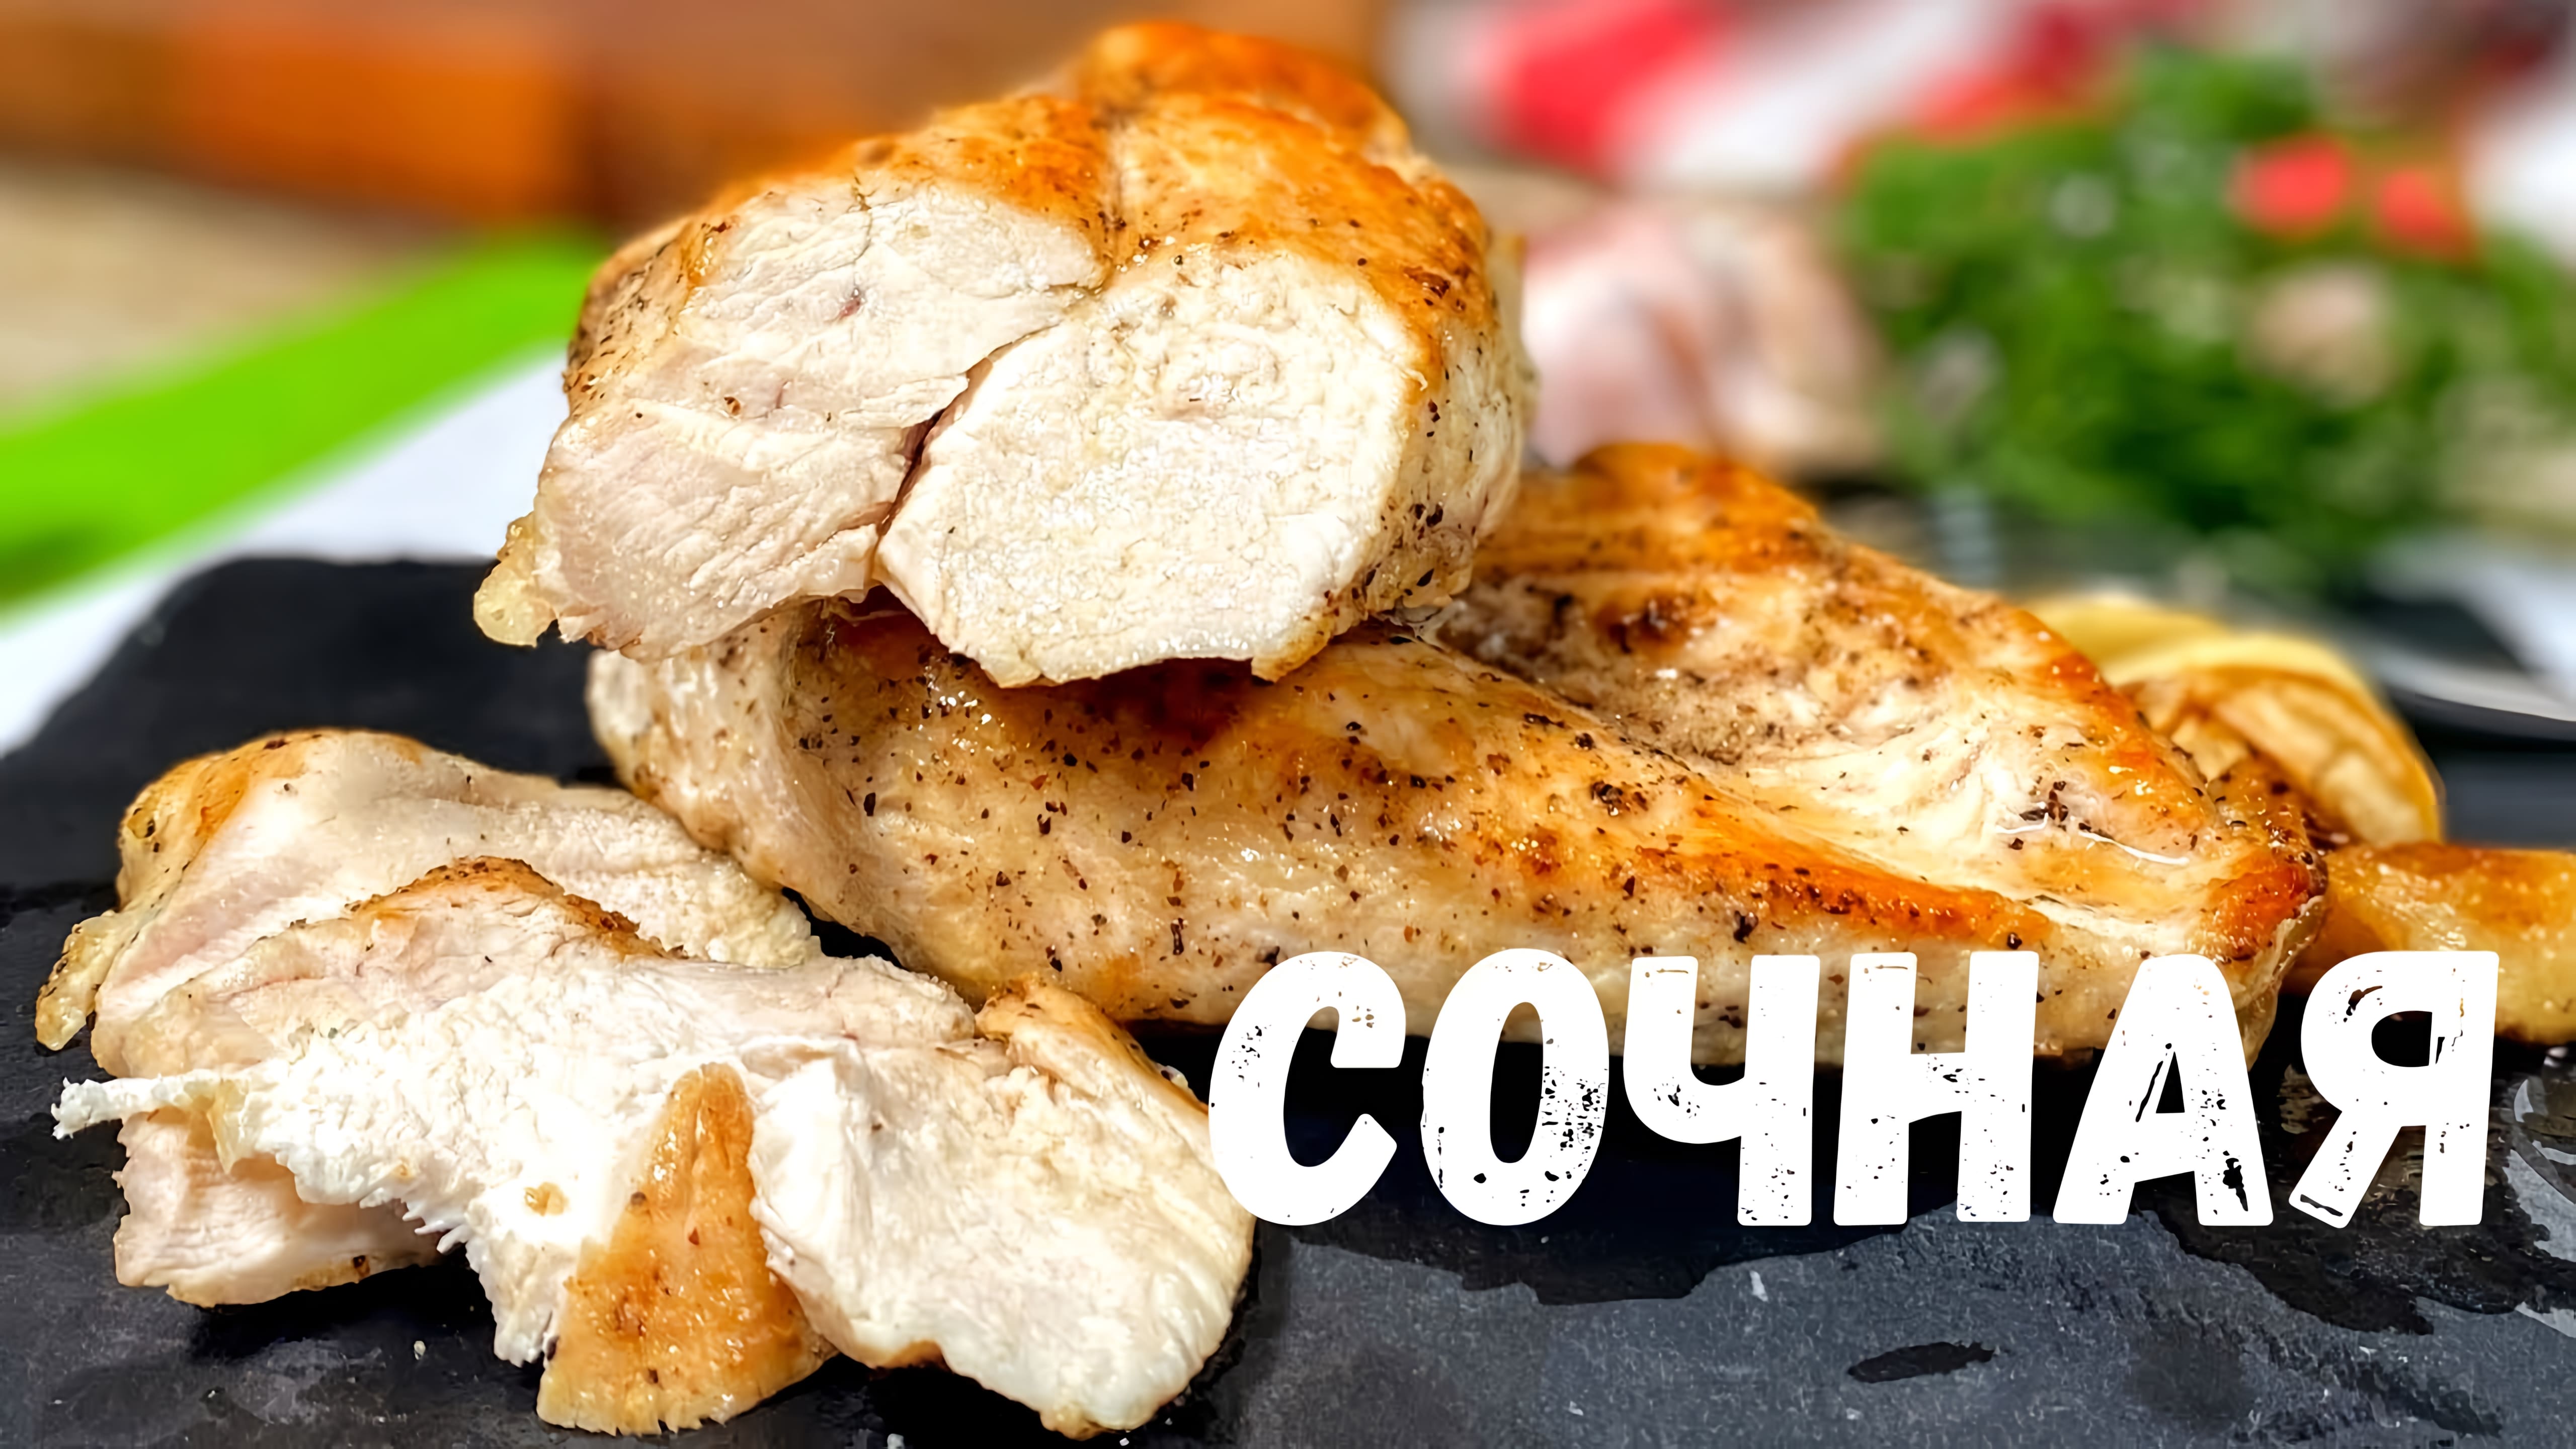 Видео: Самая сочная куриная грудка.Такое филе вы будете готовить каждый день!Как приготовить куриную грудку